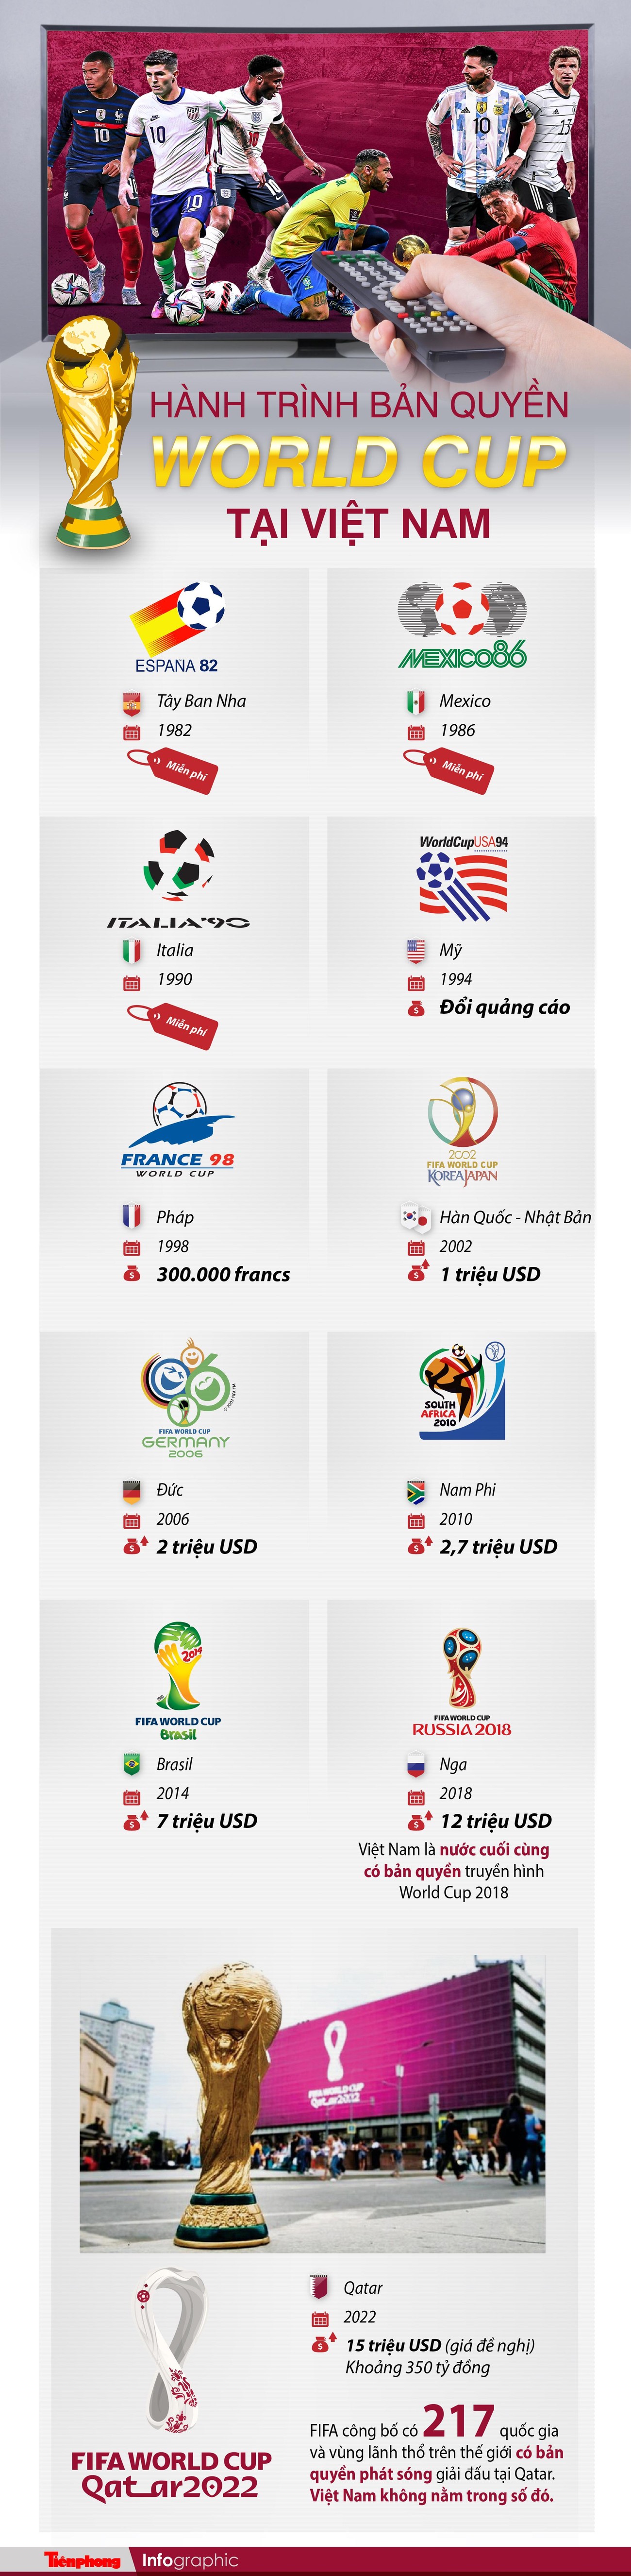 Hành trình bản quyền World Cup tại Việt Nam ảnh 1